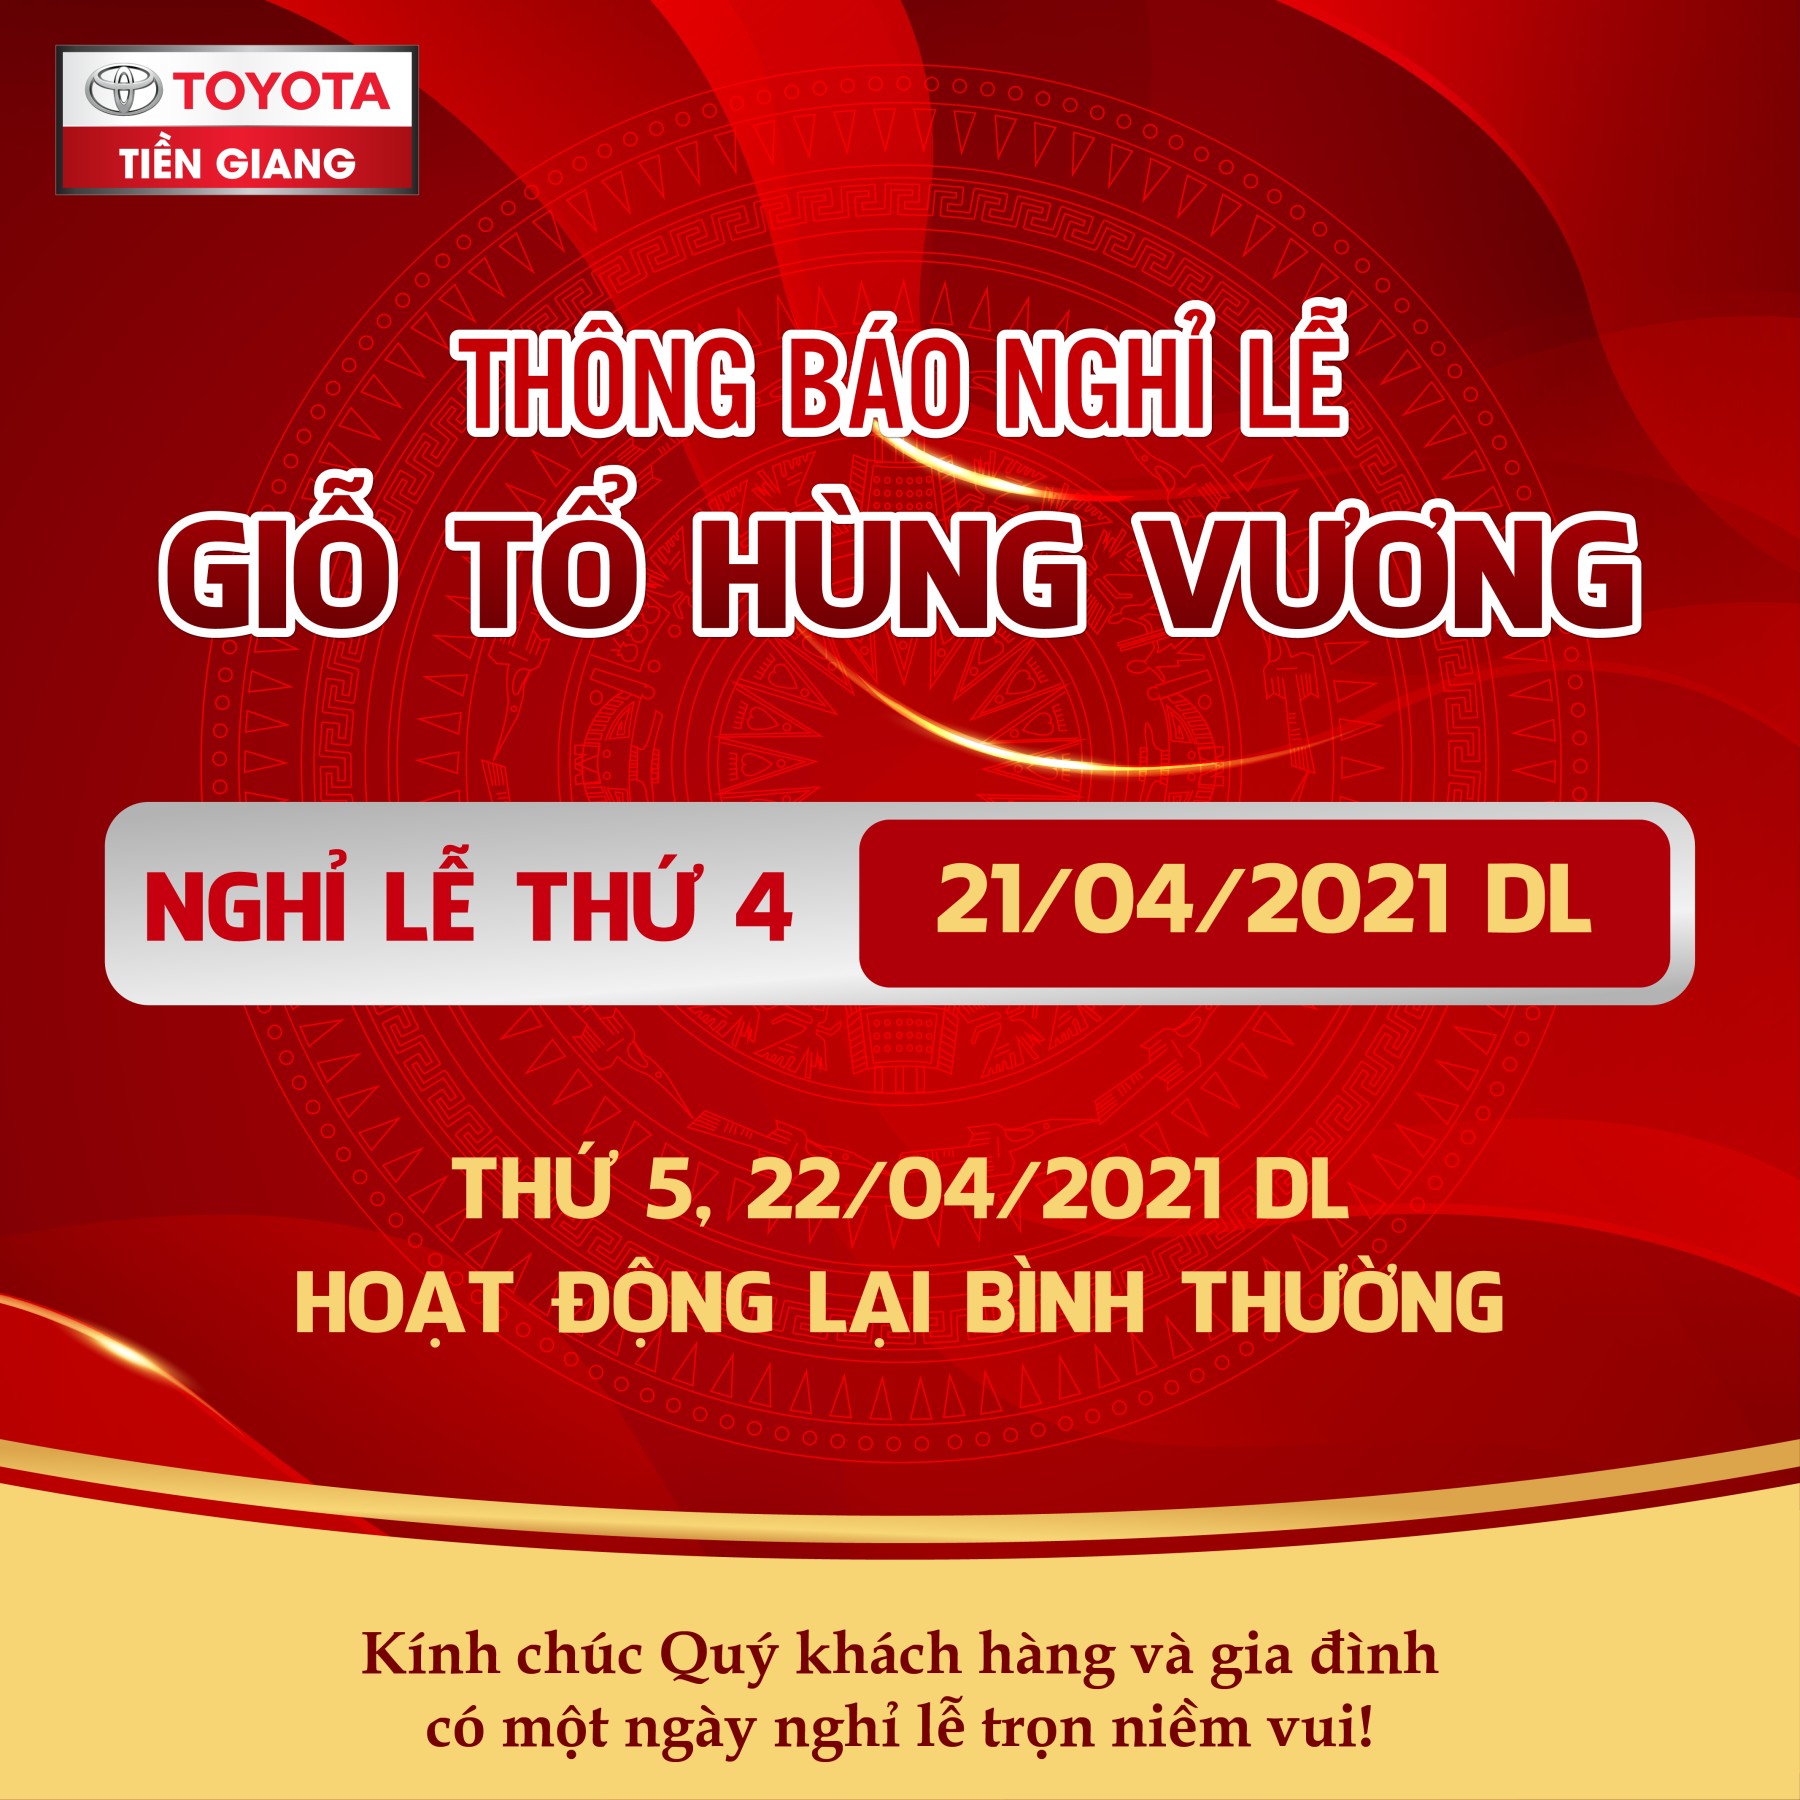 nghi_le_gio_to_hung_vuong